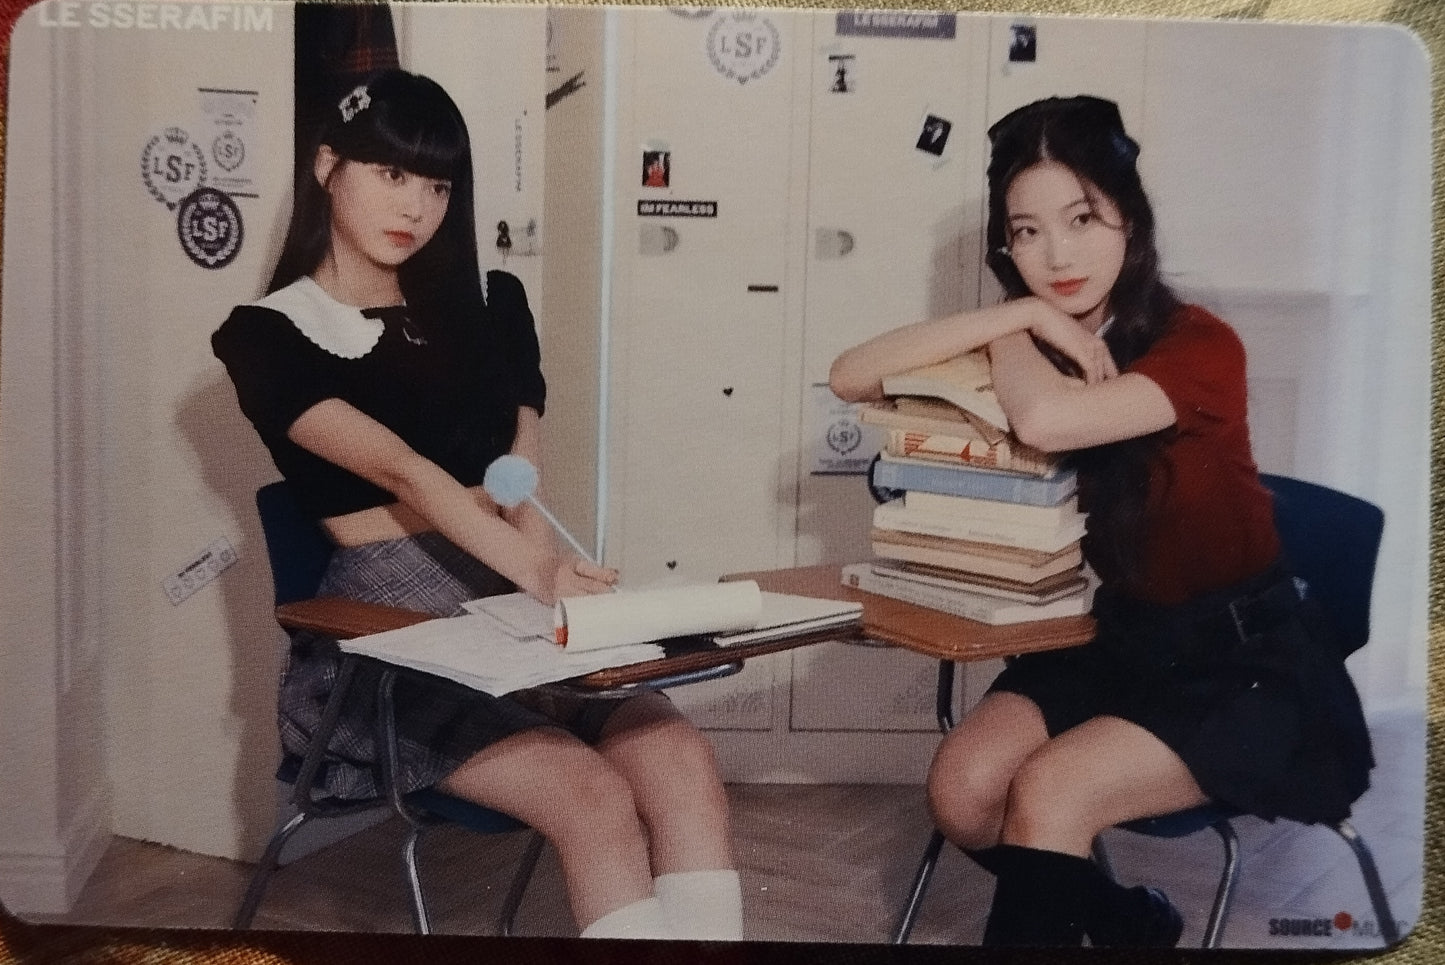 Photocard LE SSERAFIM Season's greetings Class of 2023 Eunchae Kazuha